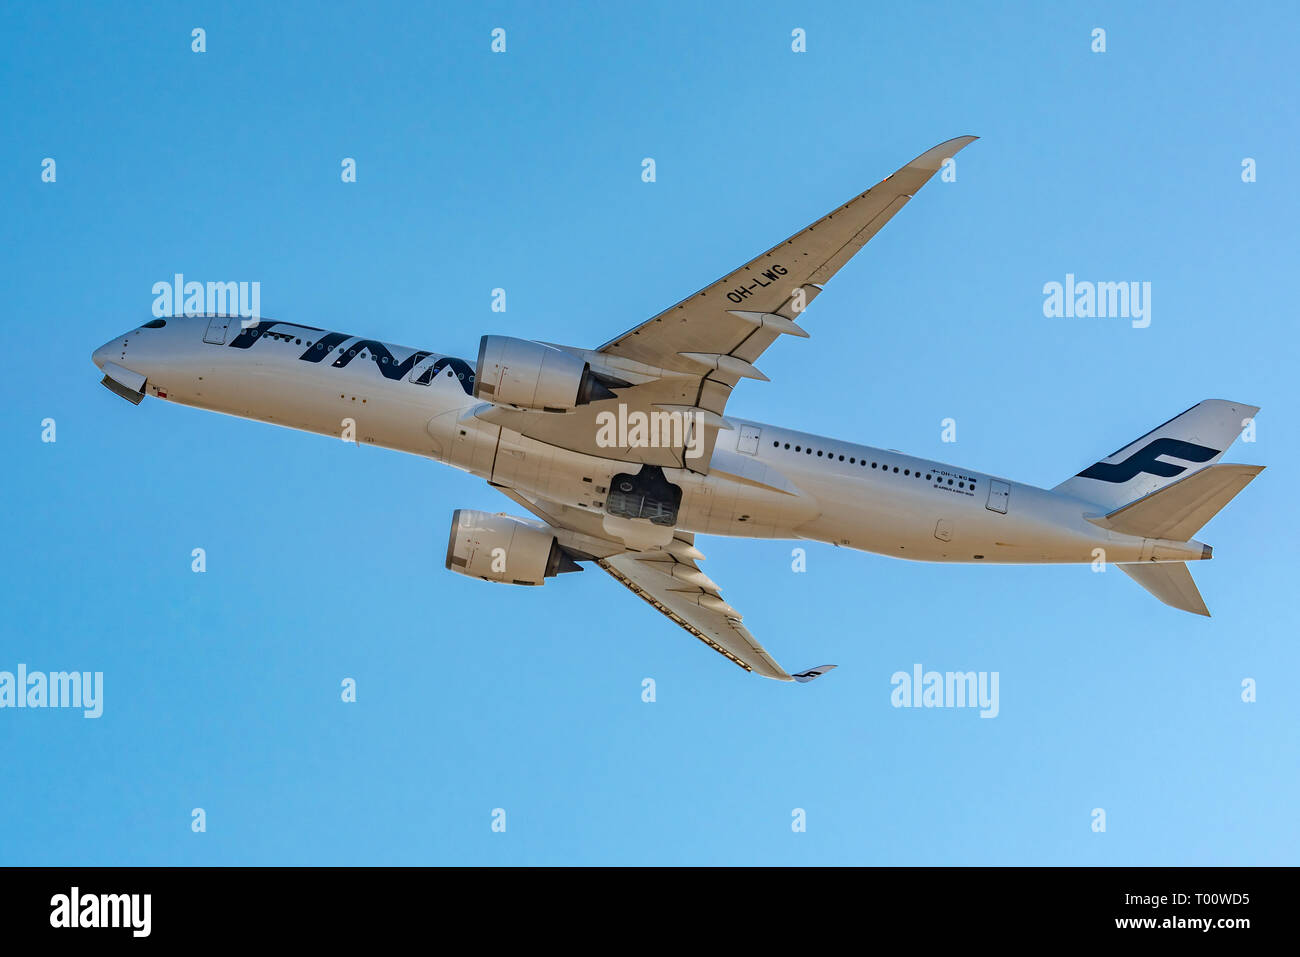 OSAKA, Giappone - GEN. 4, 2019: Finnair Airbus A350-900 decollo dall'Aeroporto Internazionale Kansai di Osaka in Giappone. Foto Stock